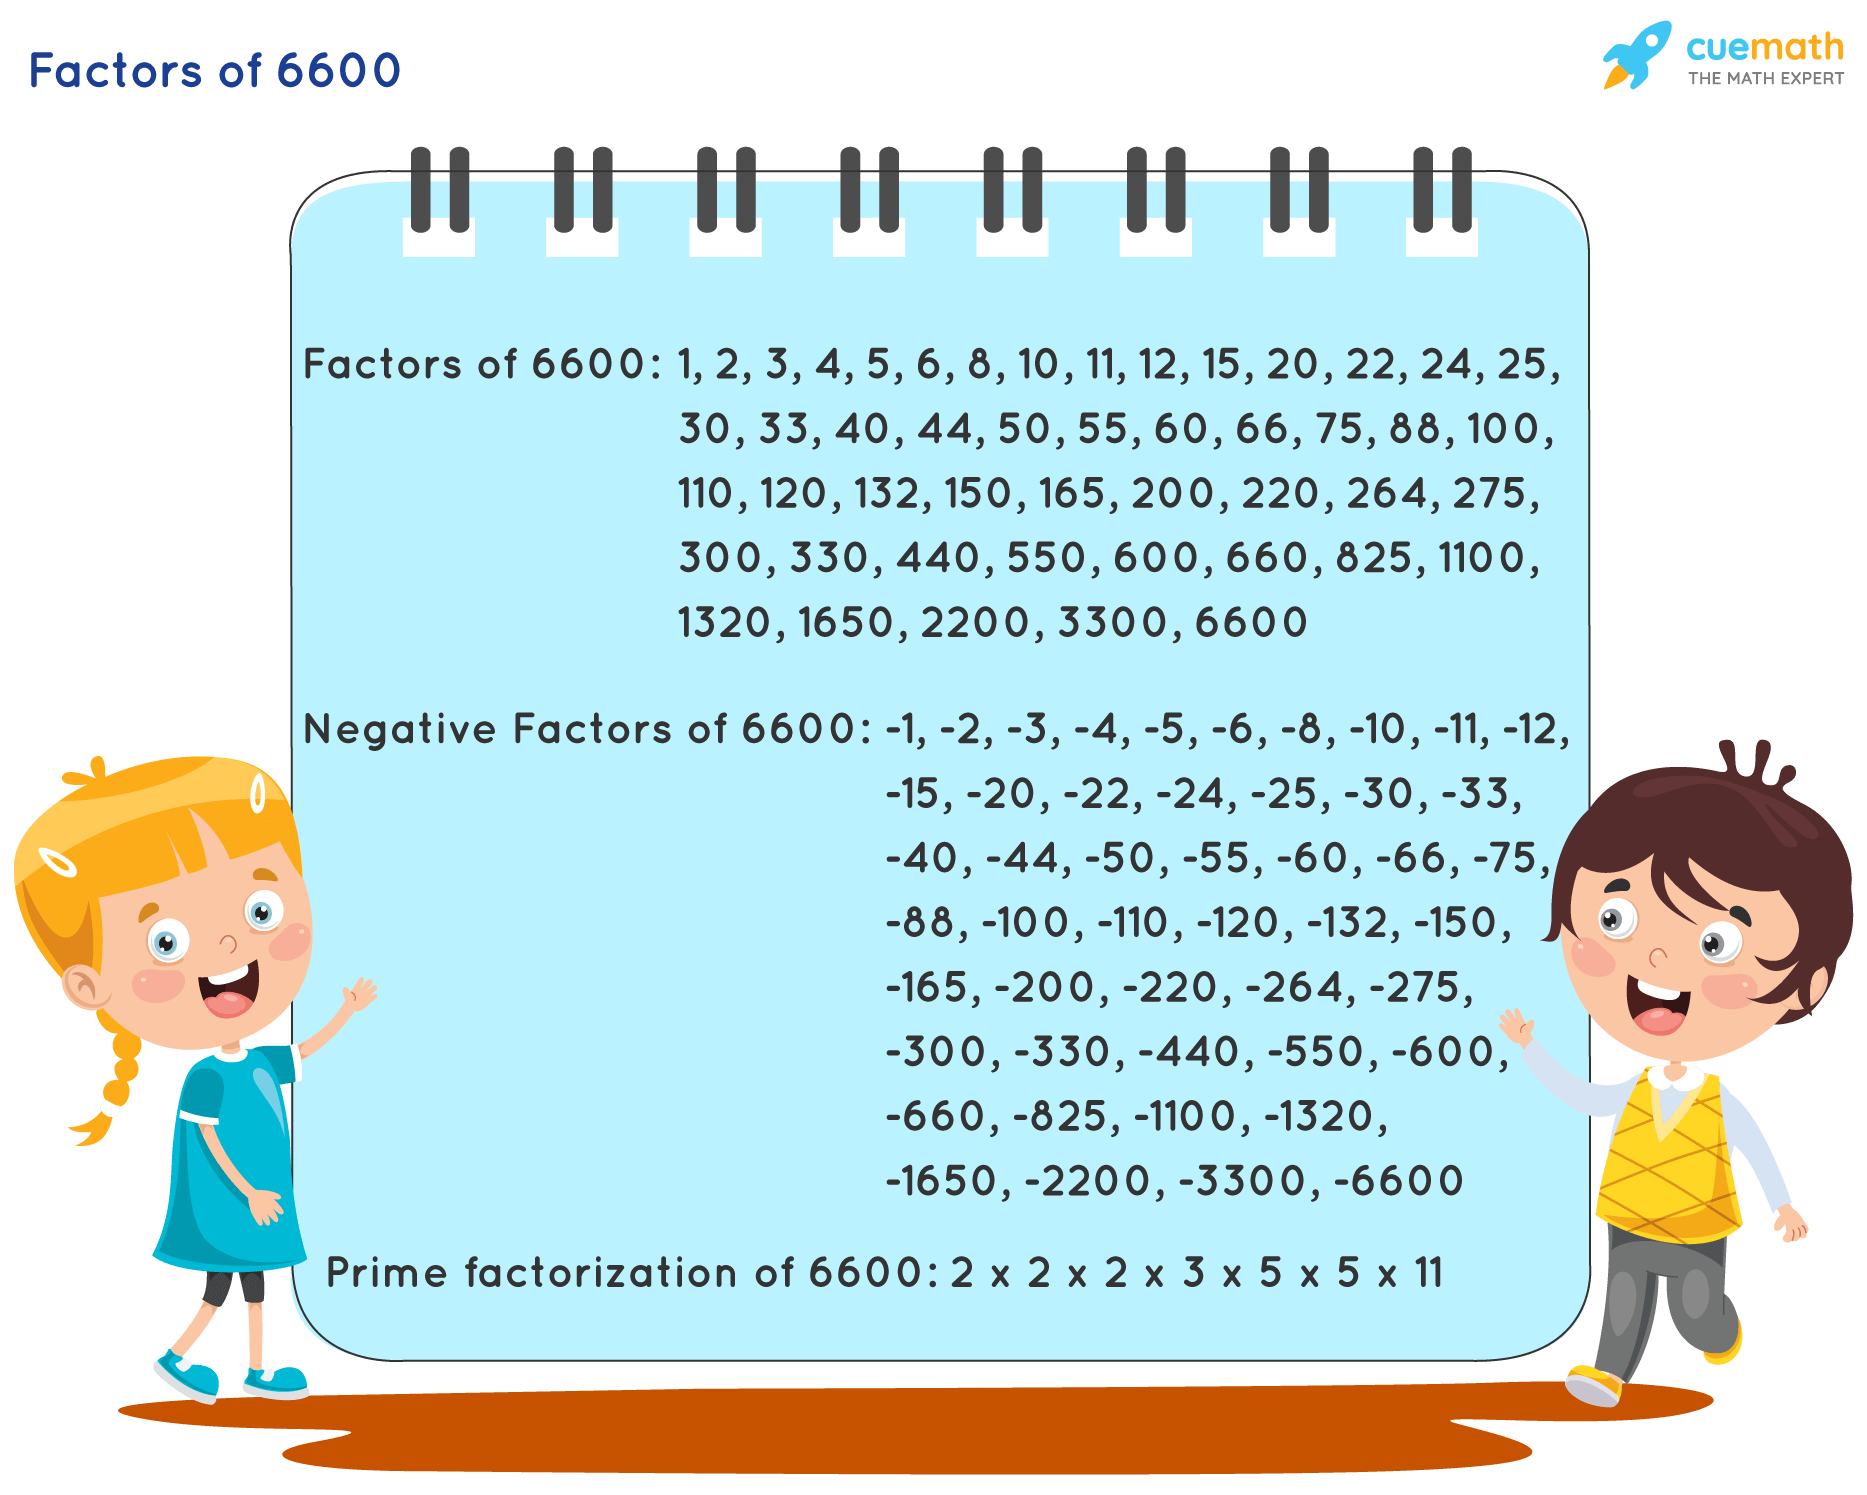 Factors of 6600